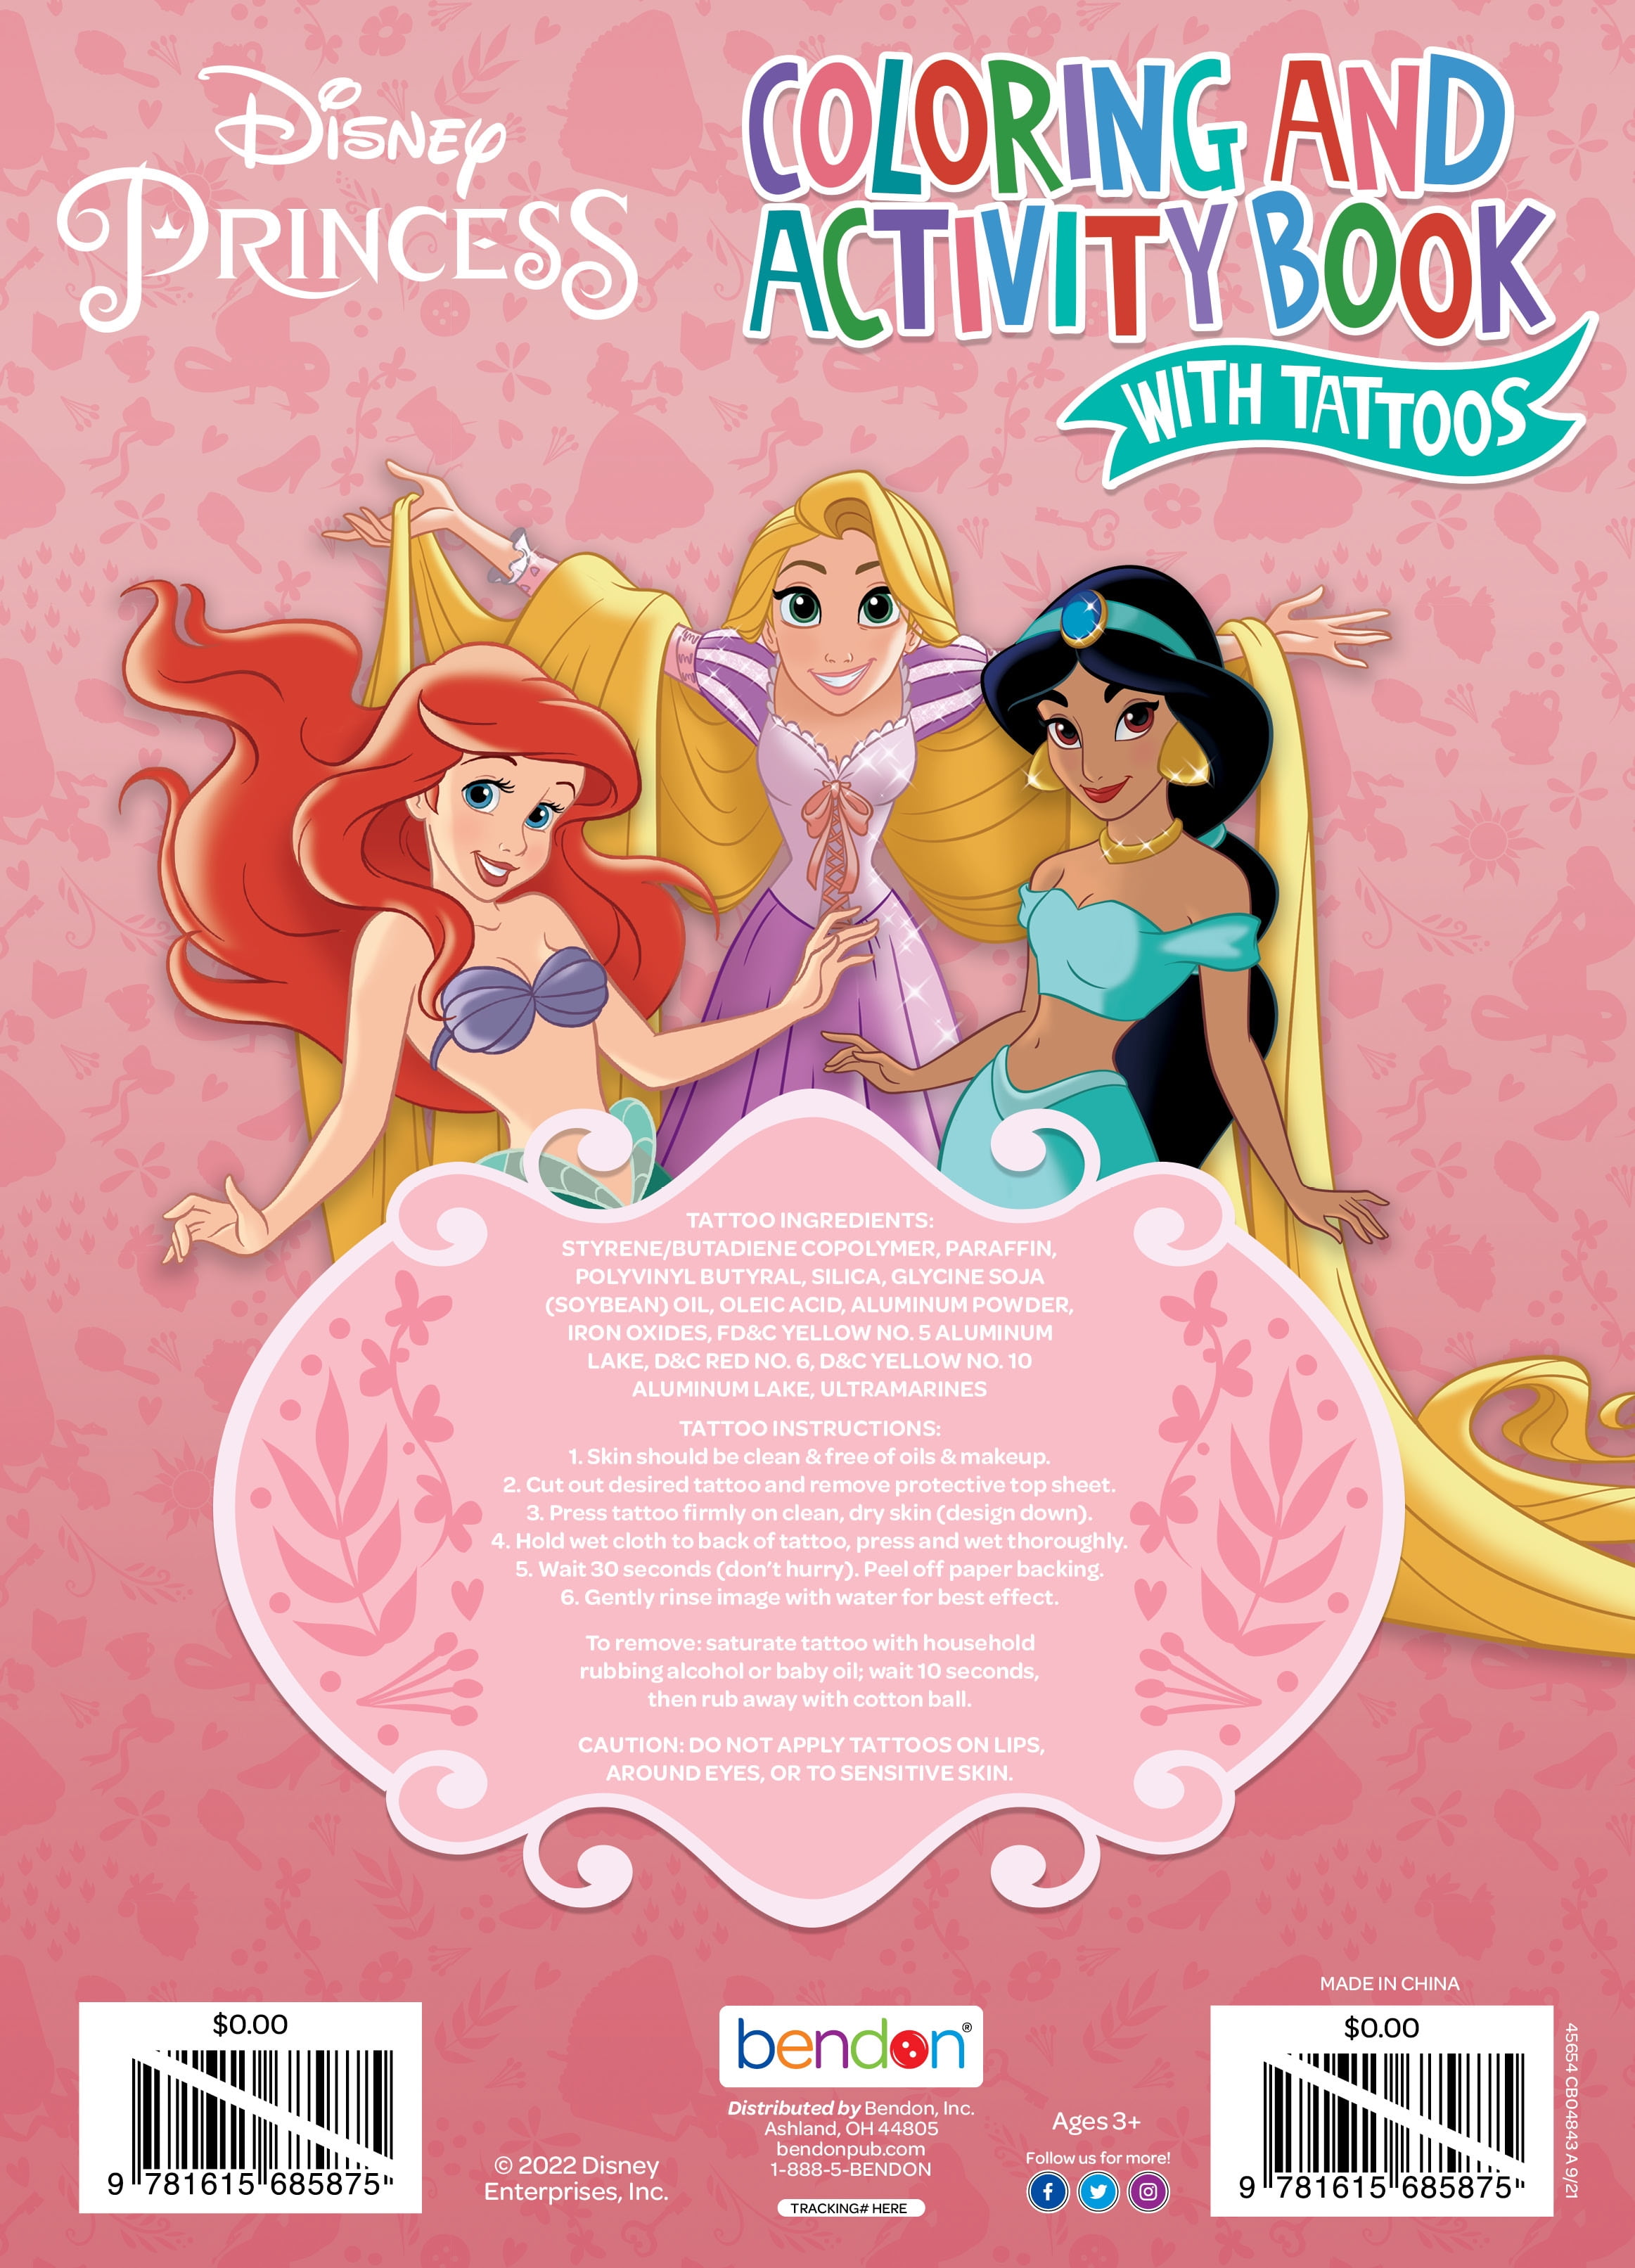 Disney Princess jumbo coloring book, Five Below